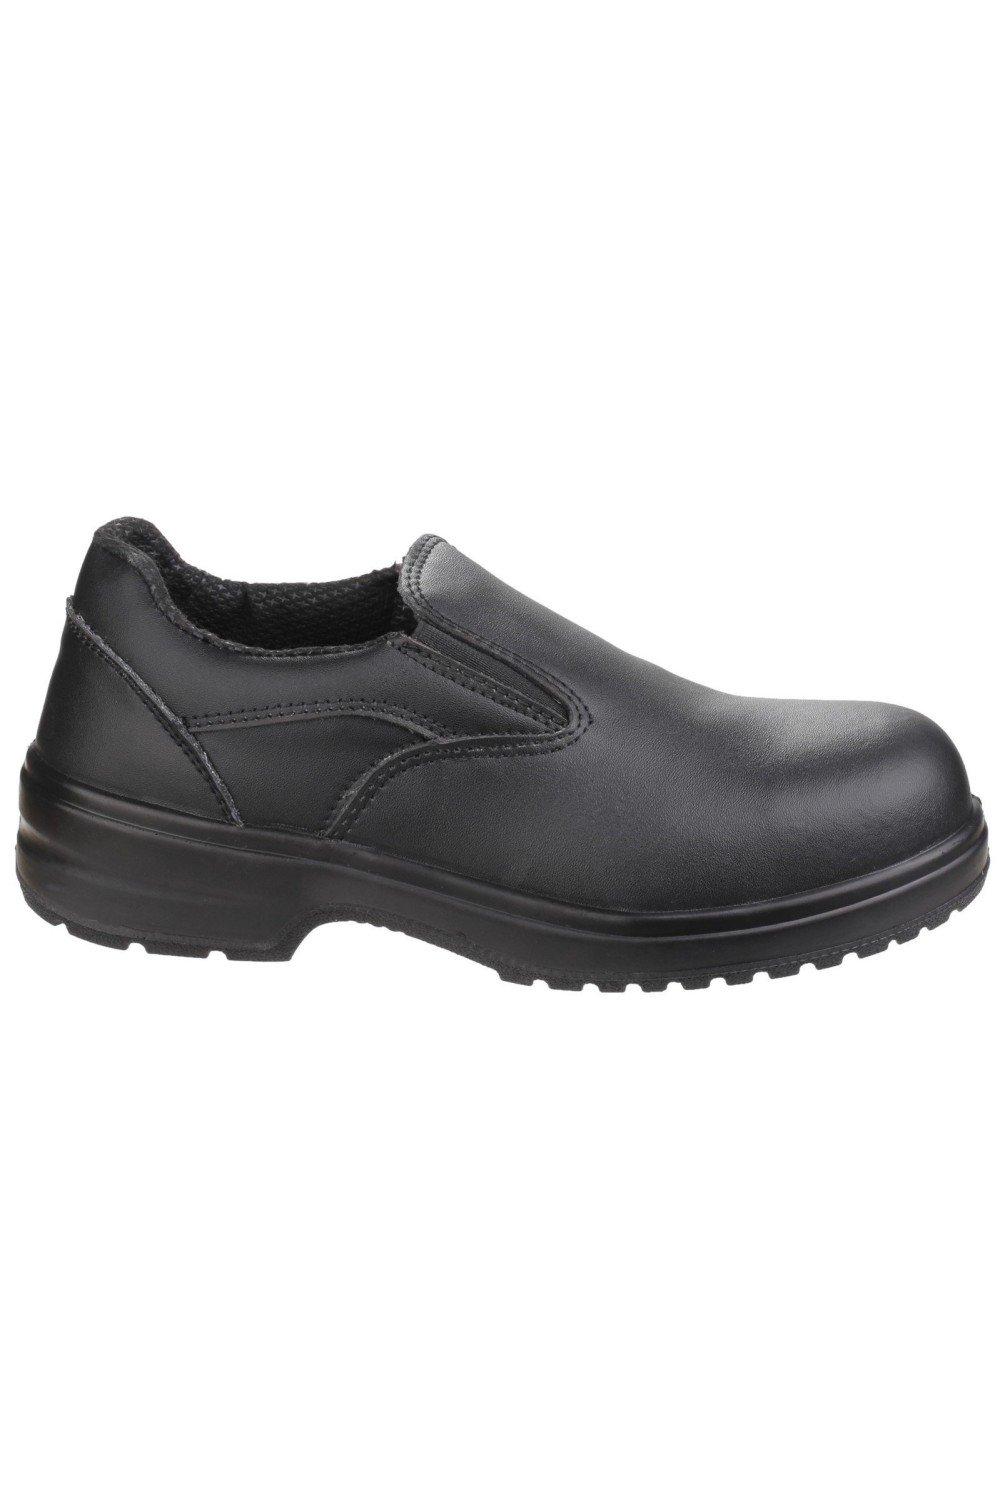 Безопасность FS94C Защитная обувь без шнуровки Amblers, черный